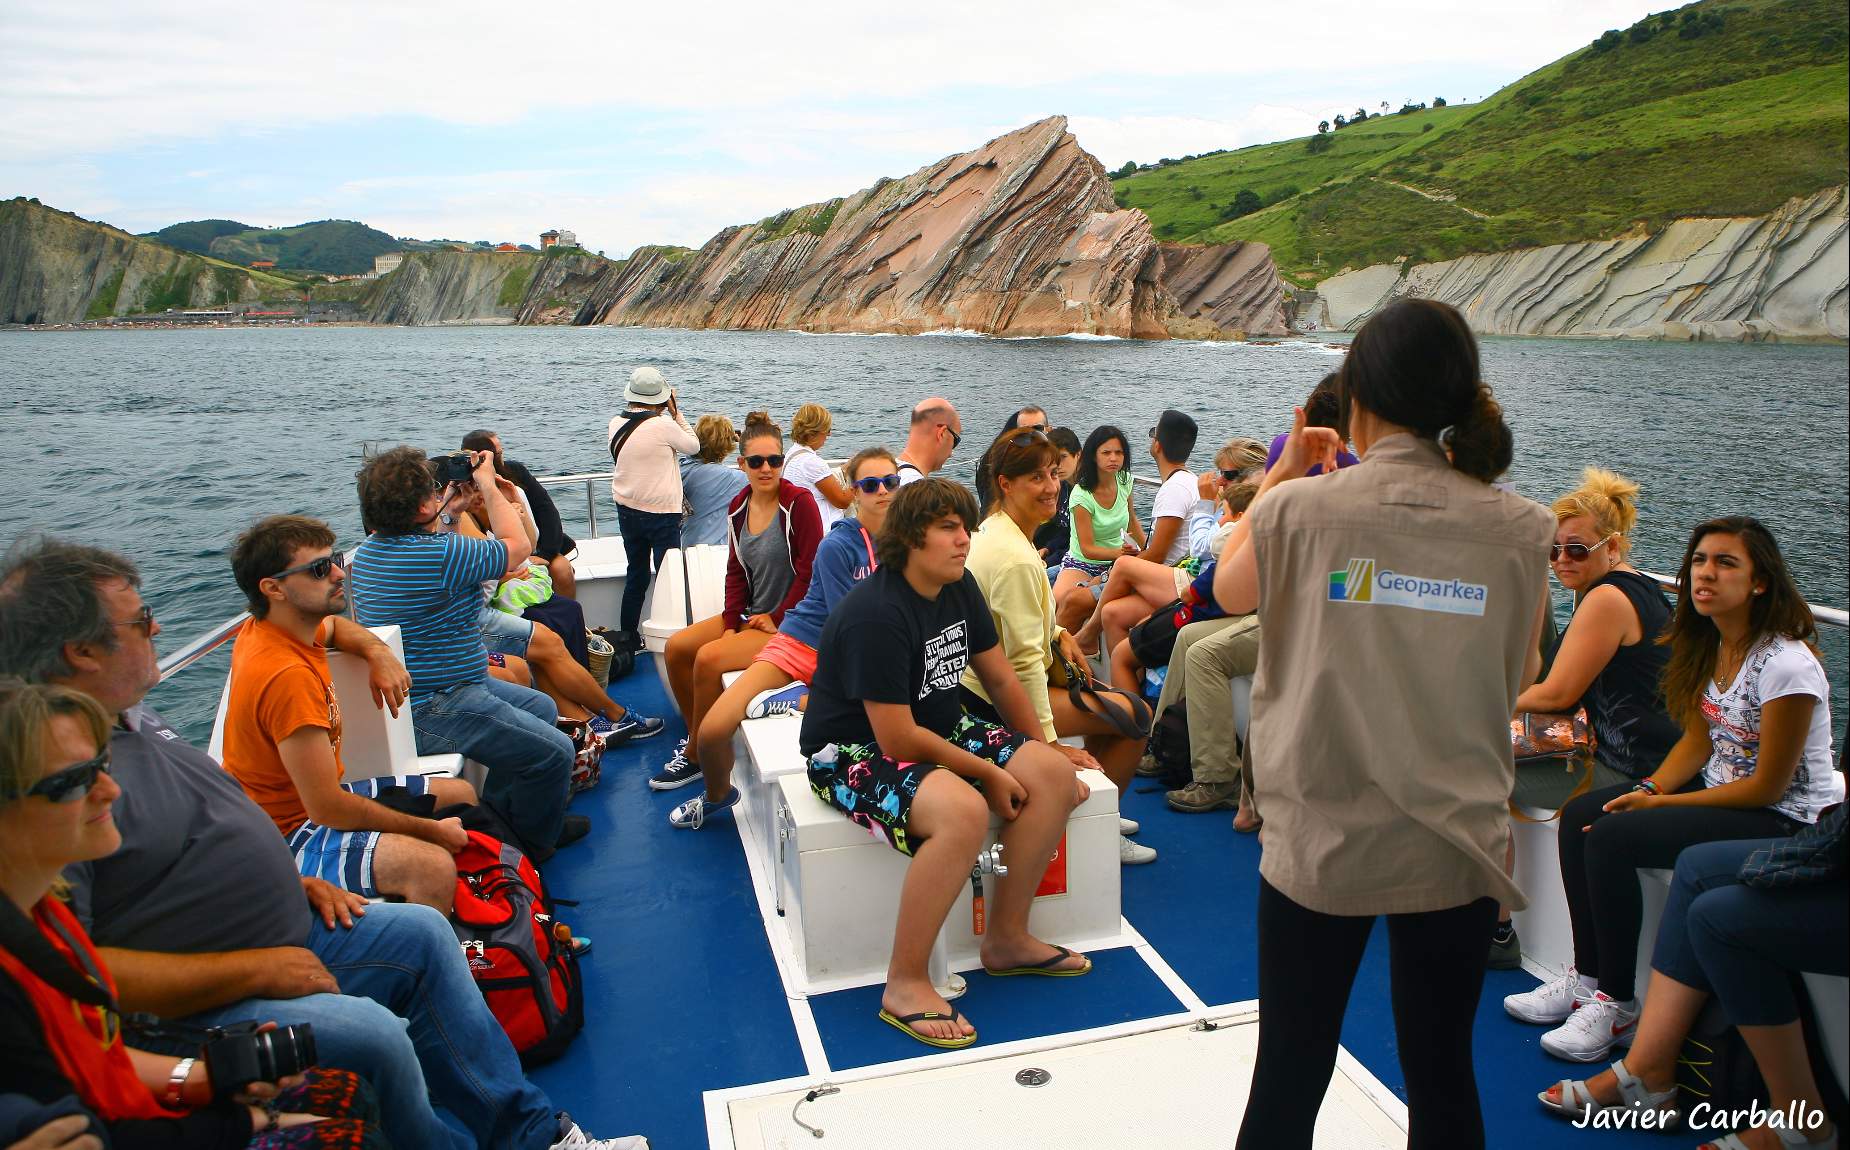 visita guiada a varios turistas por el mar viendo diferentes puntos de la costa